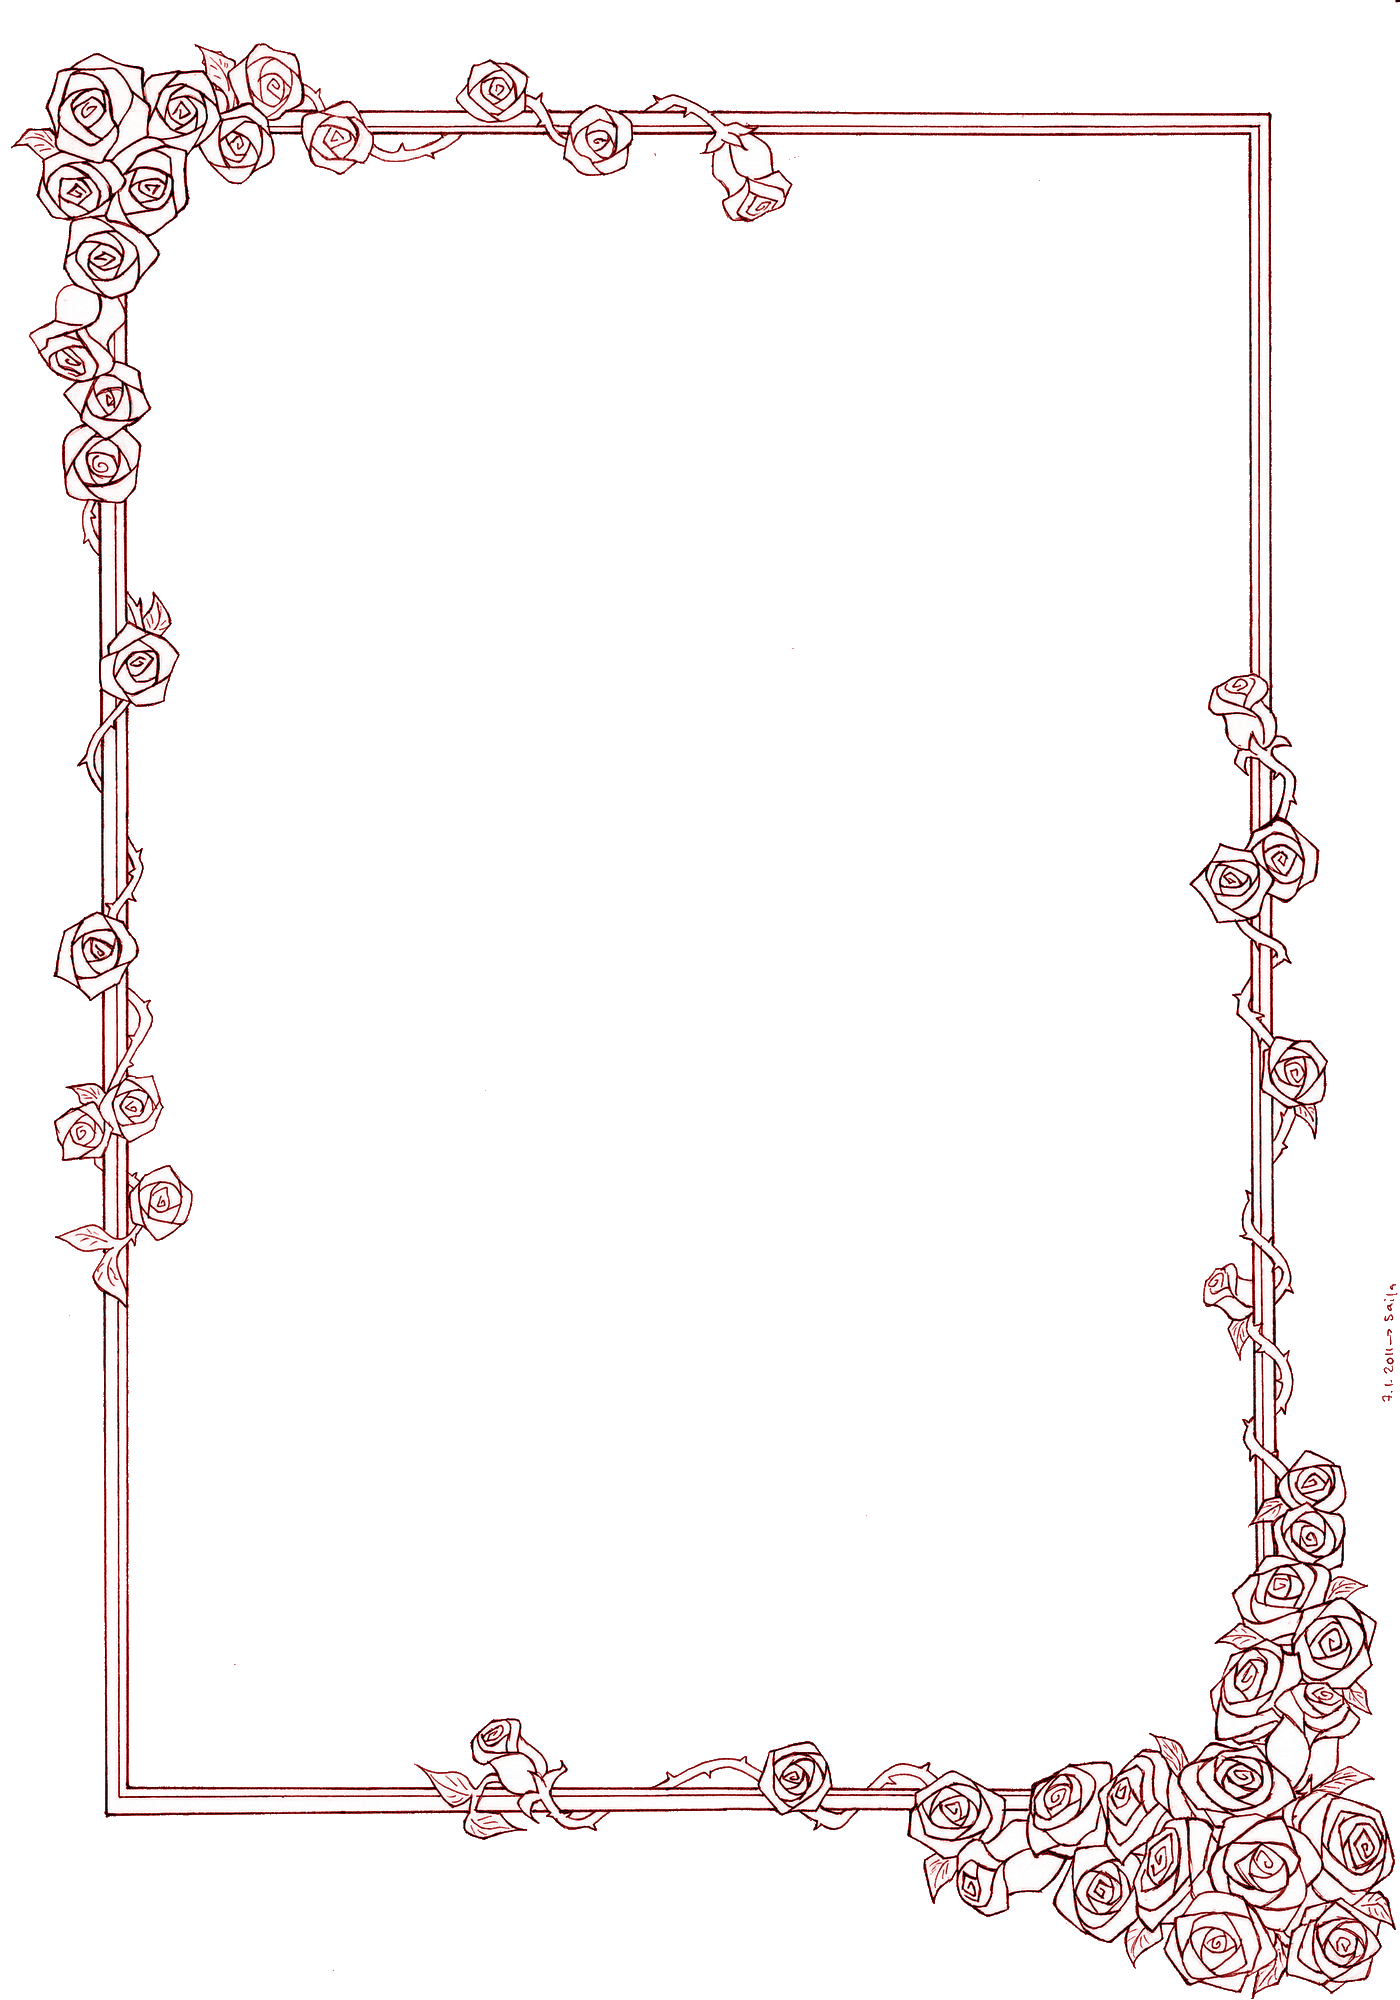 花のイラスト フリー素材 フレーム枠no 630 紫 バラ 蔦